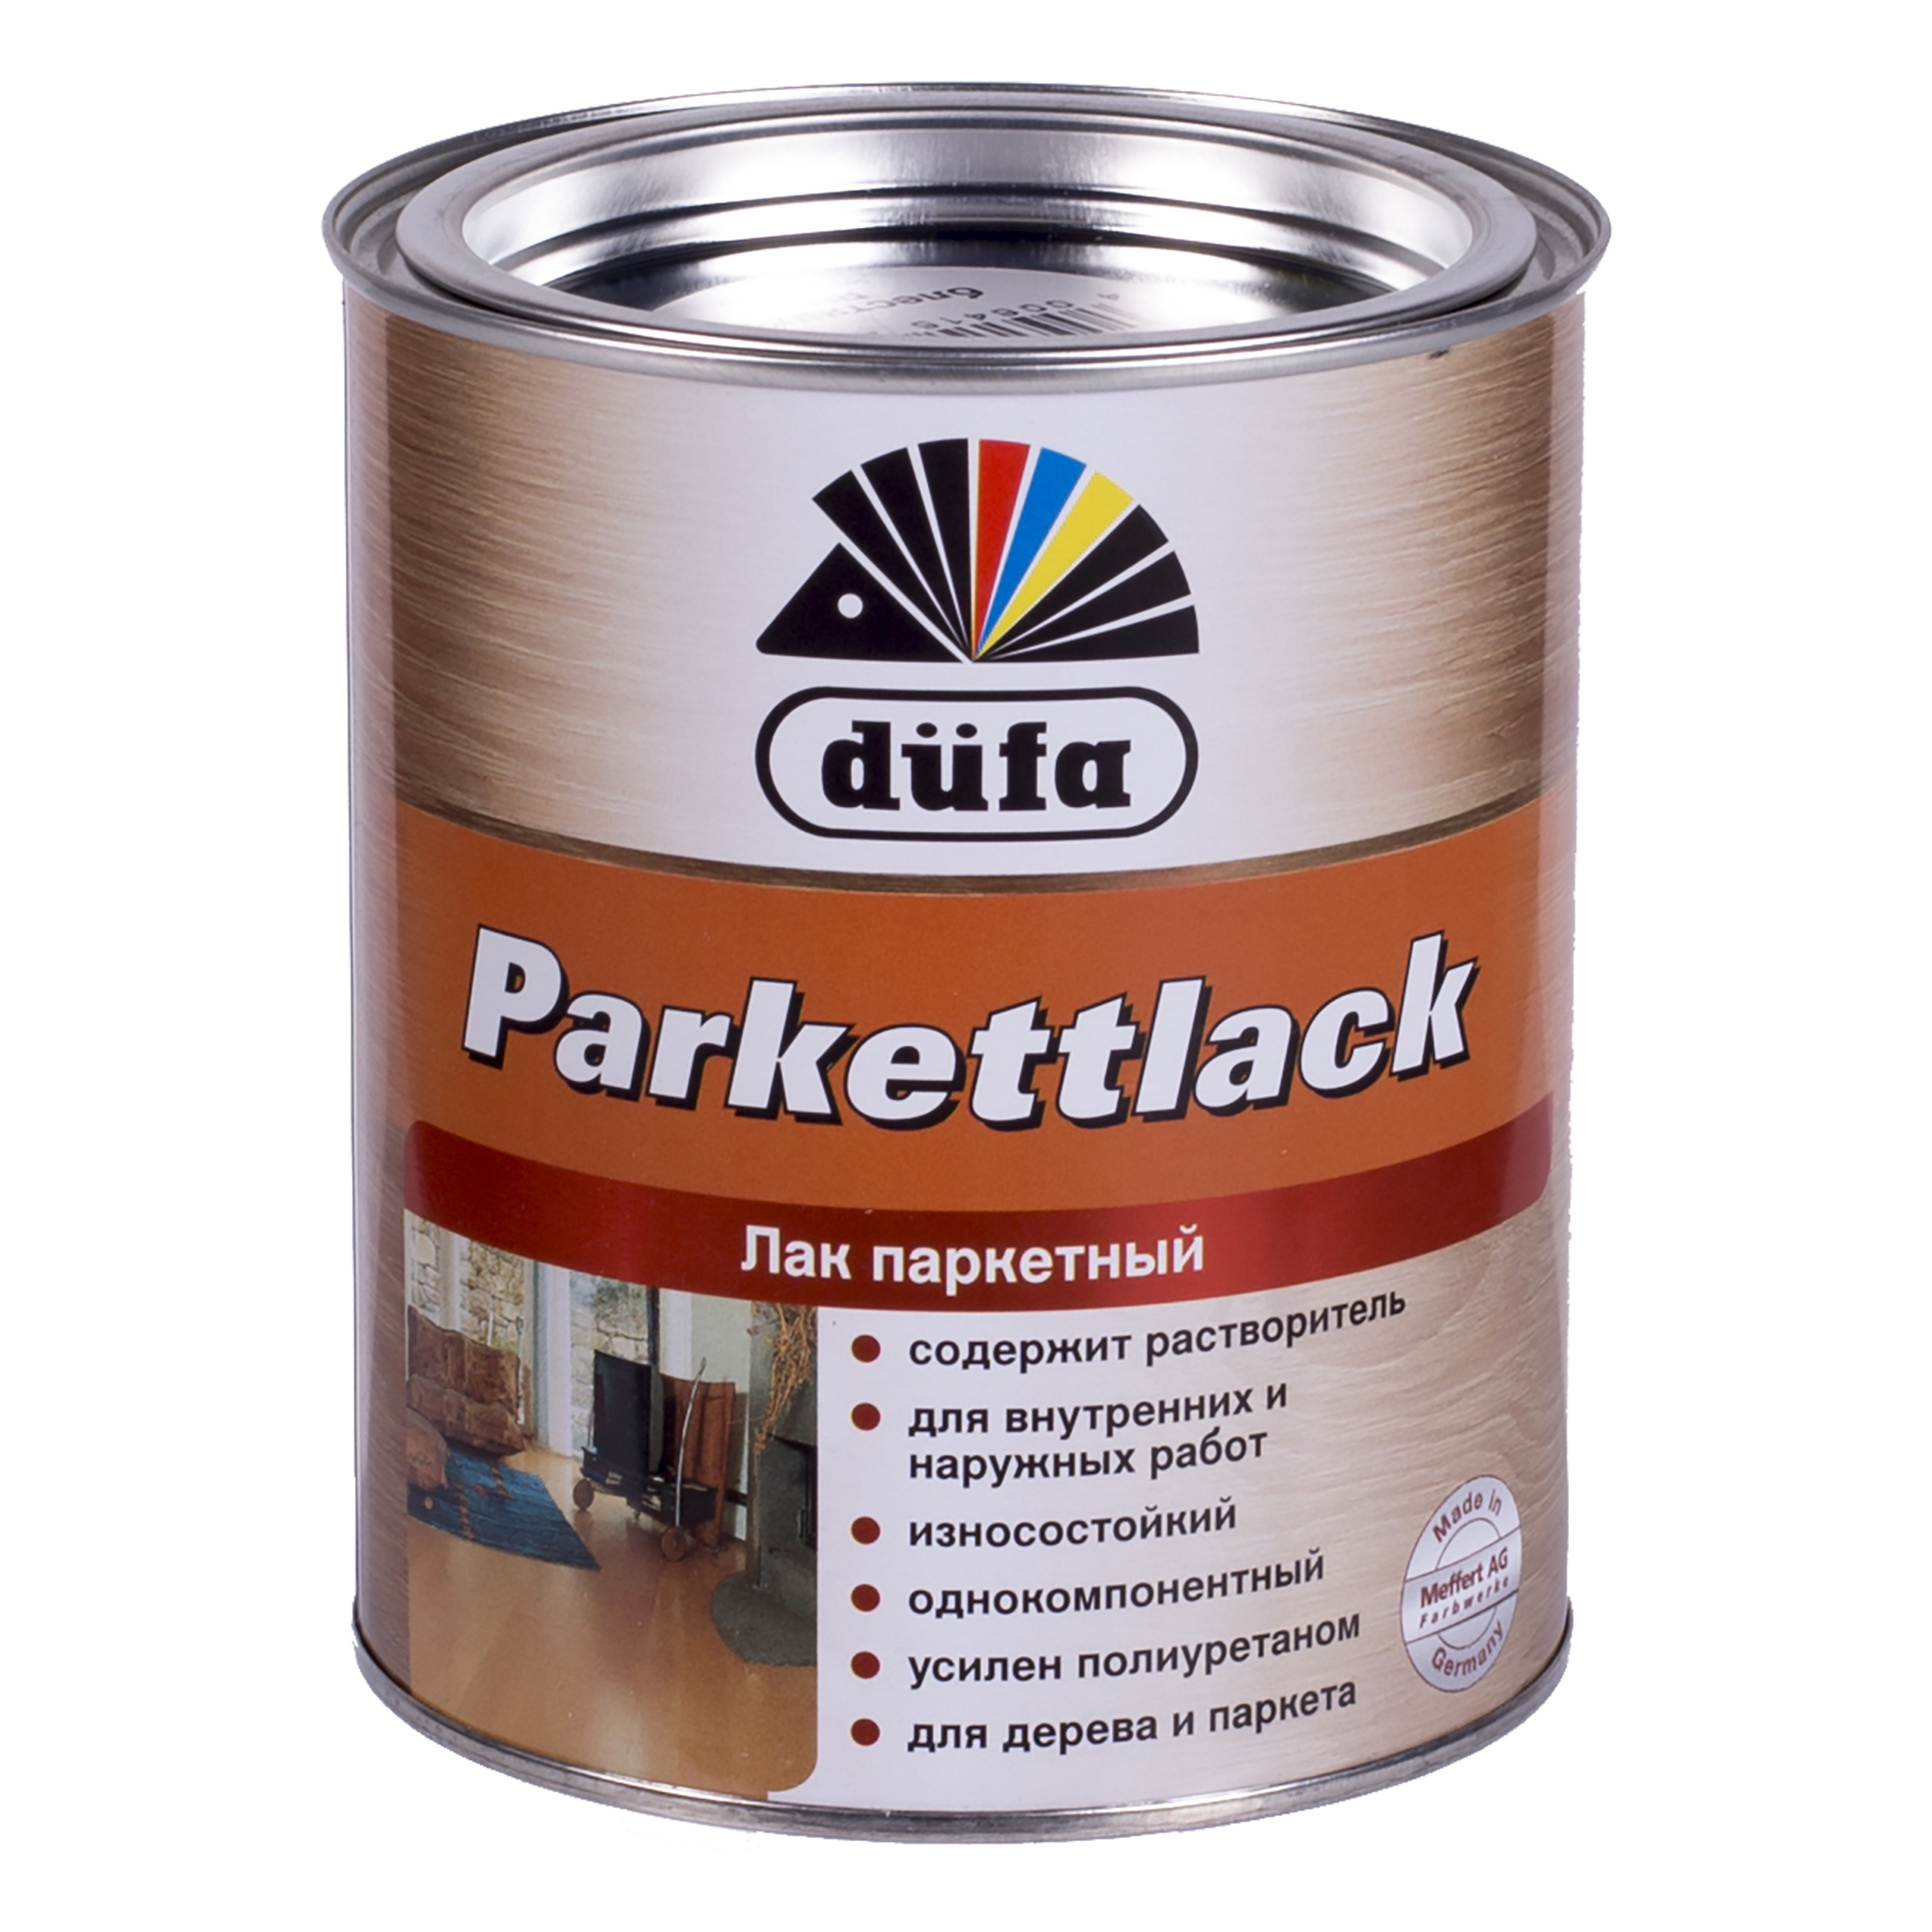  паркетный глянцевый Dufa Parkettlack 0.75 л  –  по .